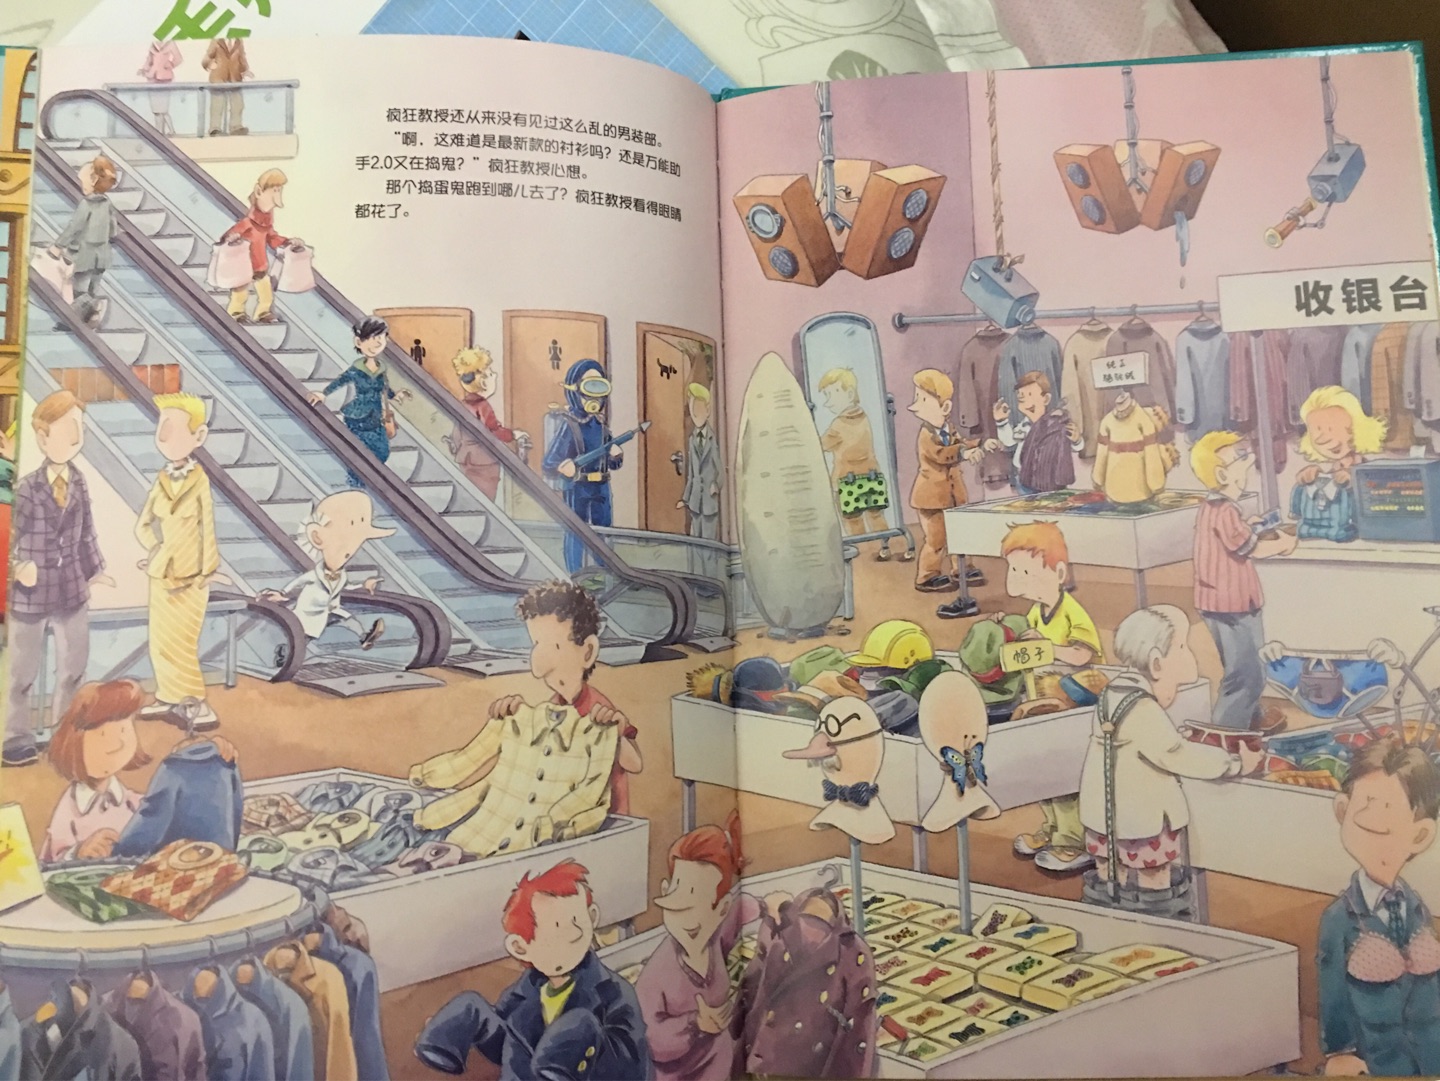 挺有趣的一本书，每一页图画都很丰富，宝宝挺喜欢看的，可以教宝宝从图画上找出机器人捣蛋的地方，互动比较多。